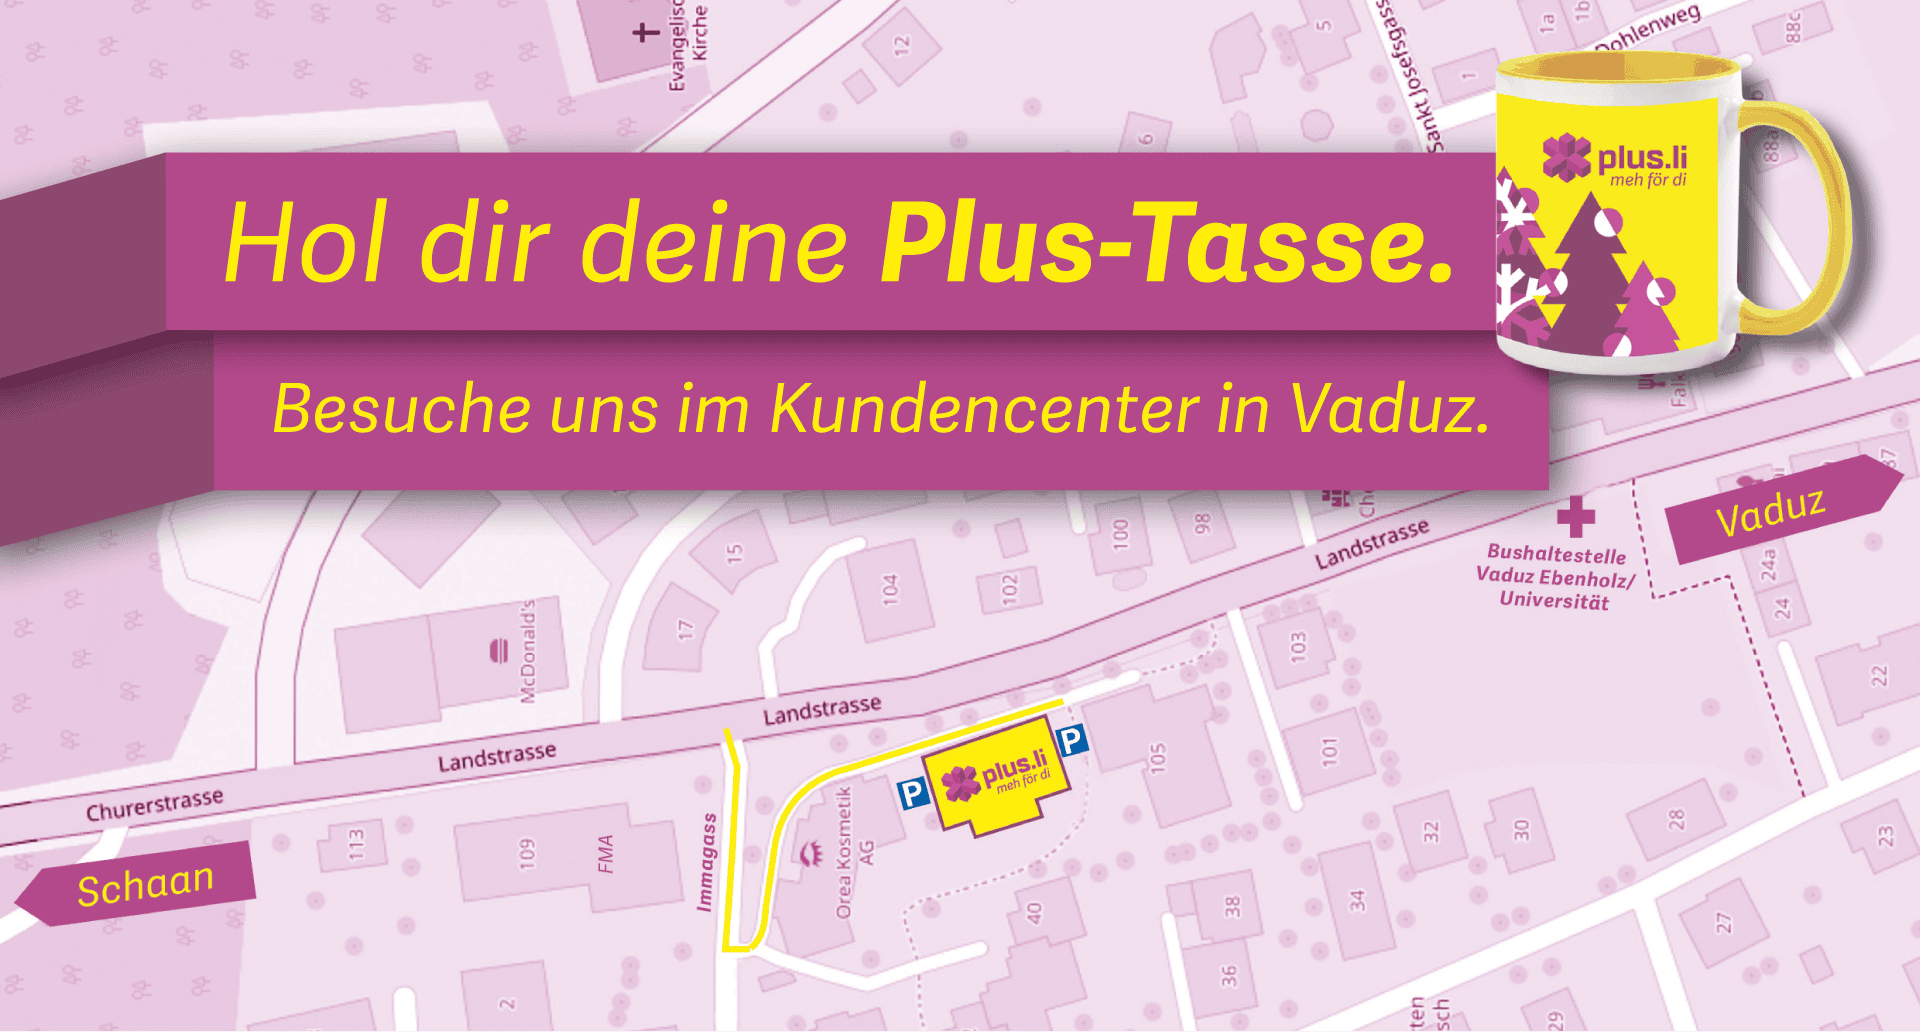 Hol dir deine Plus-Tasse im Kundencenter in Vaduz